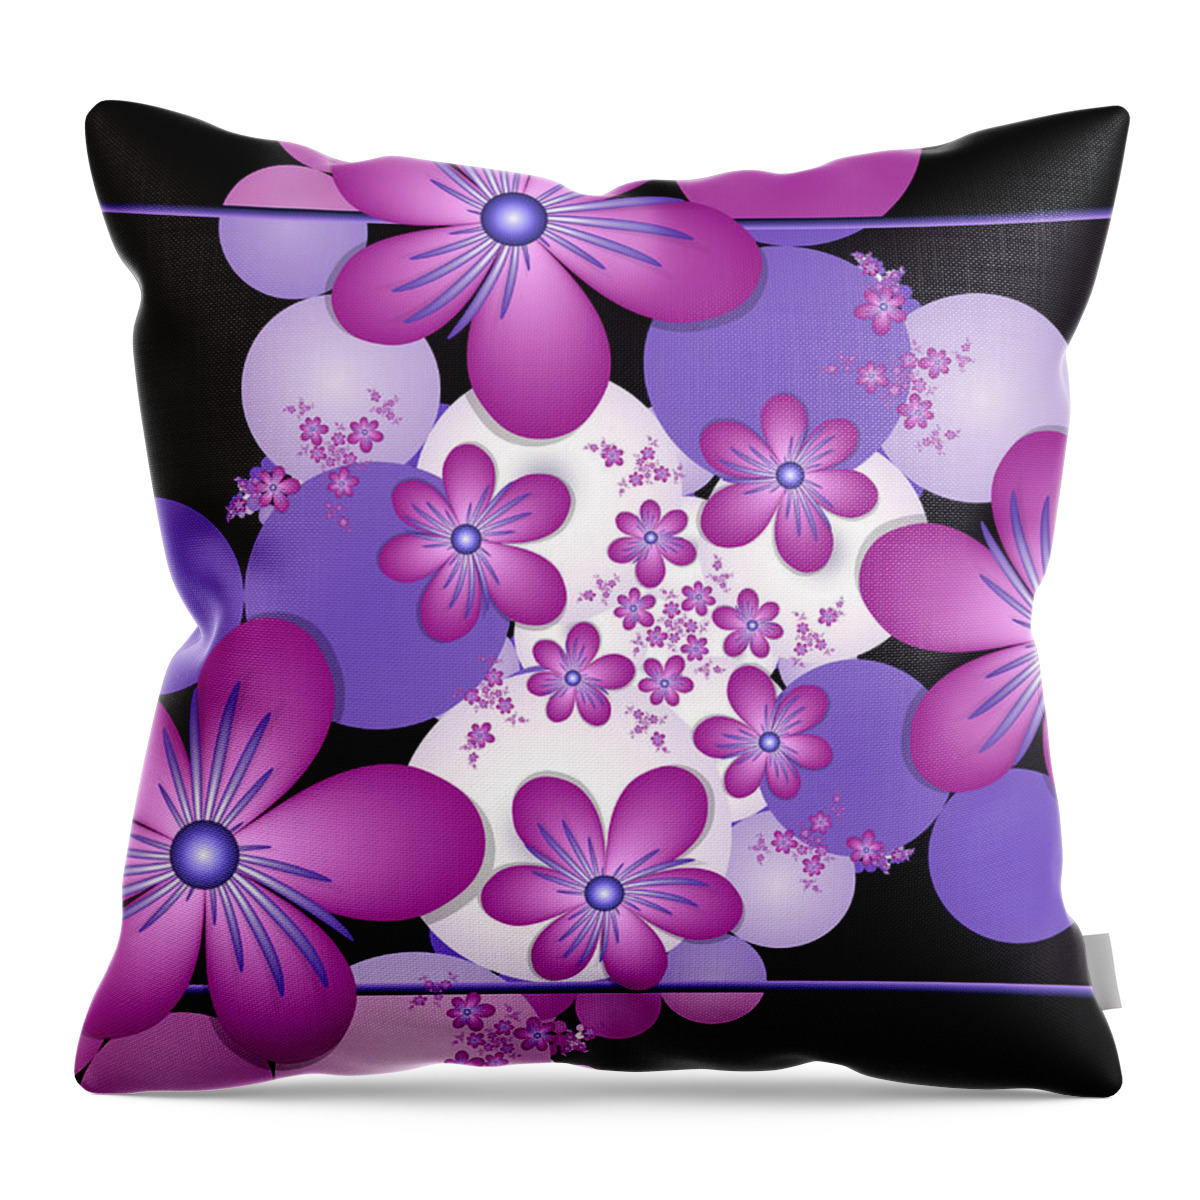 Fractal Throw Pillow featuring the digital art Fractal Flowers Modern Art by Gabiw Art